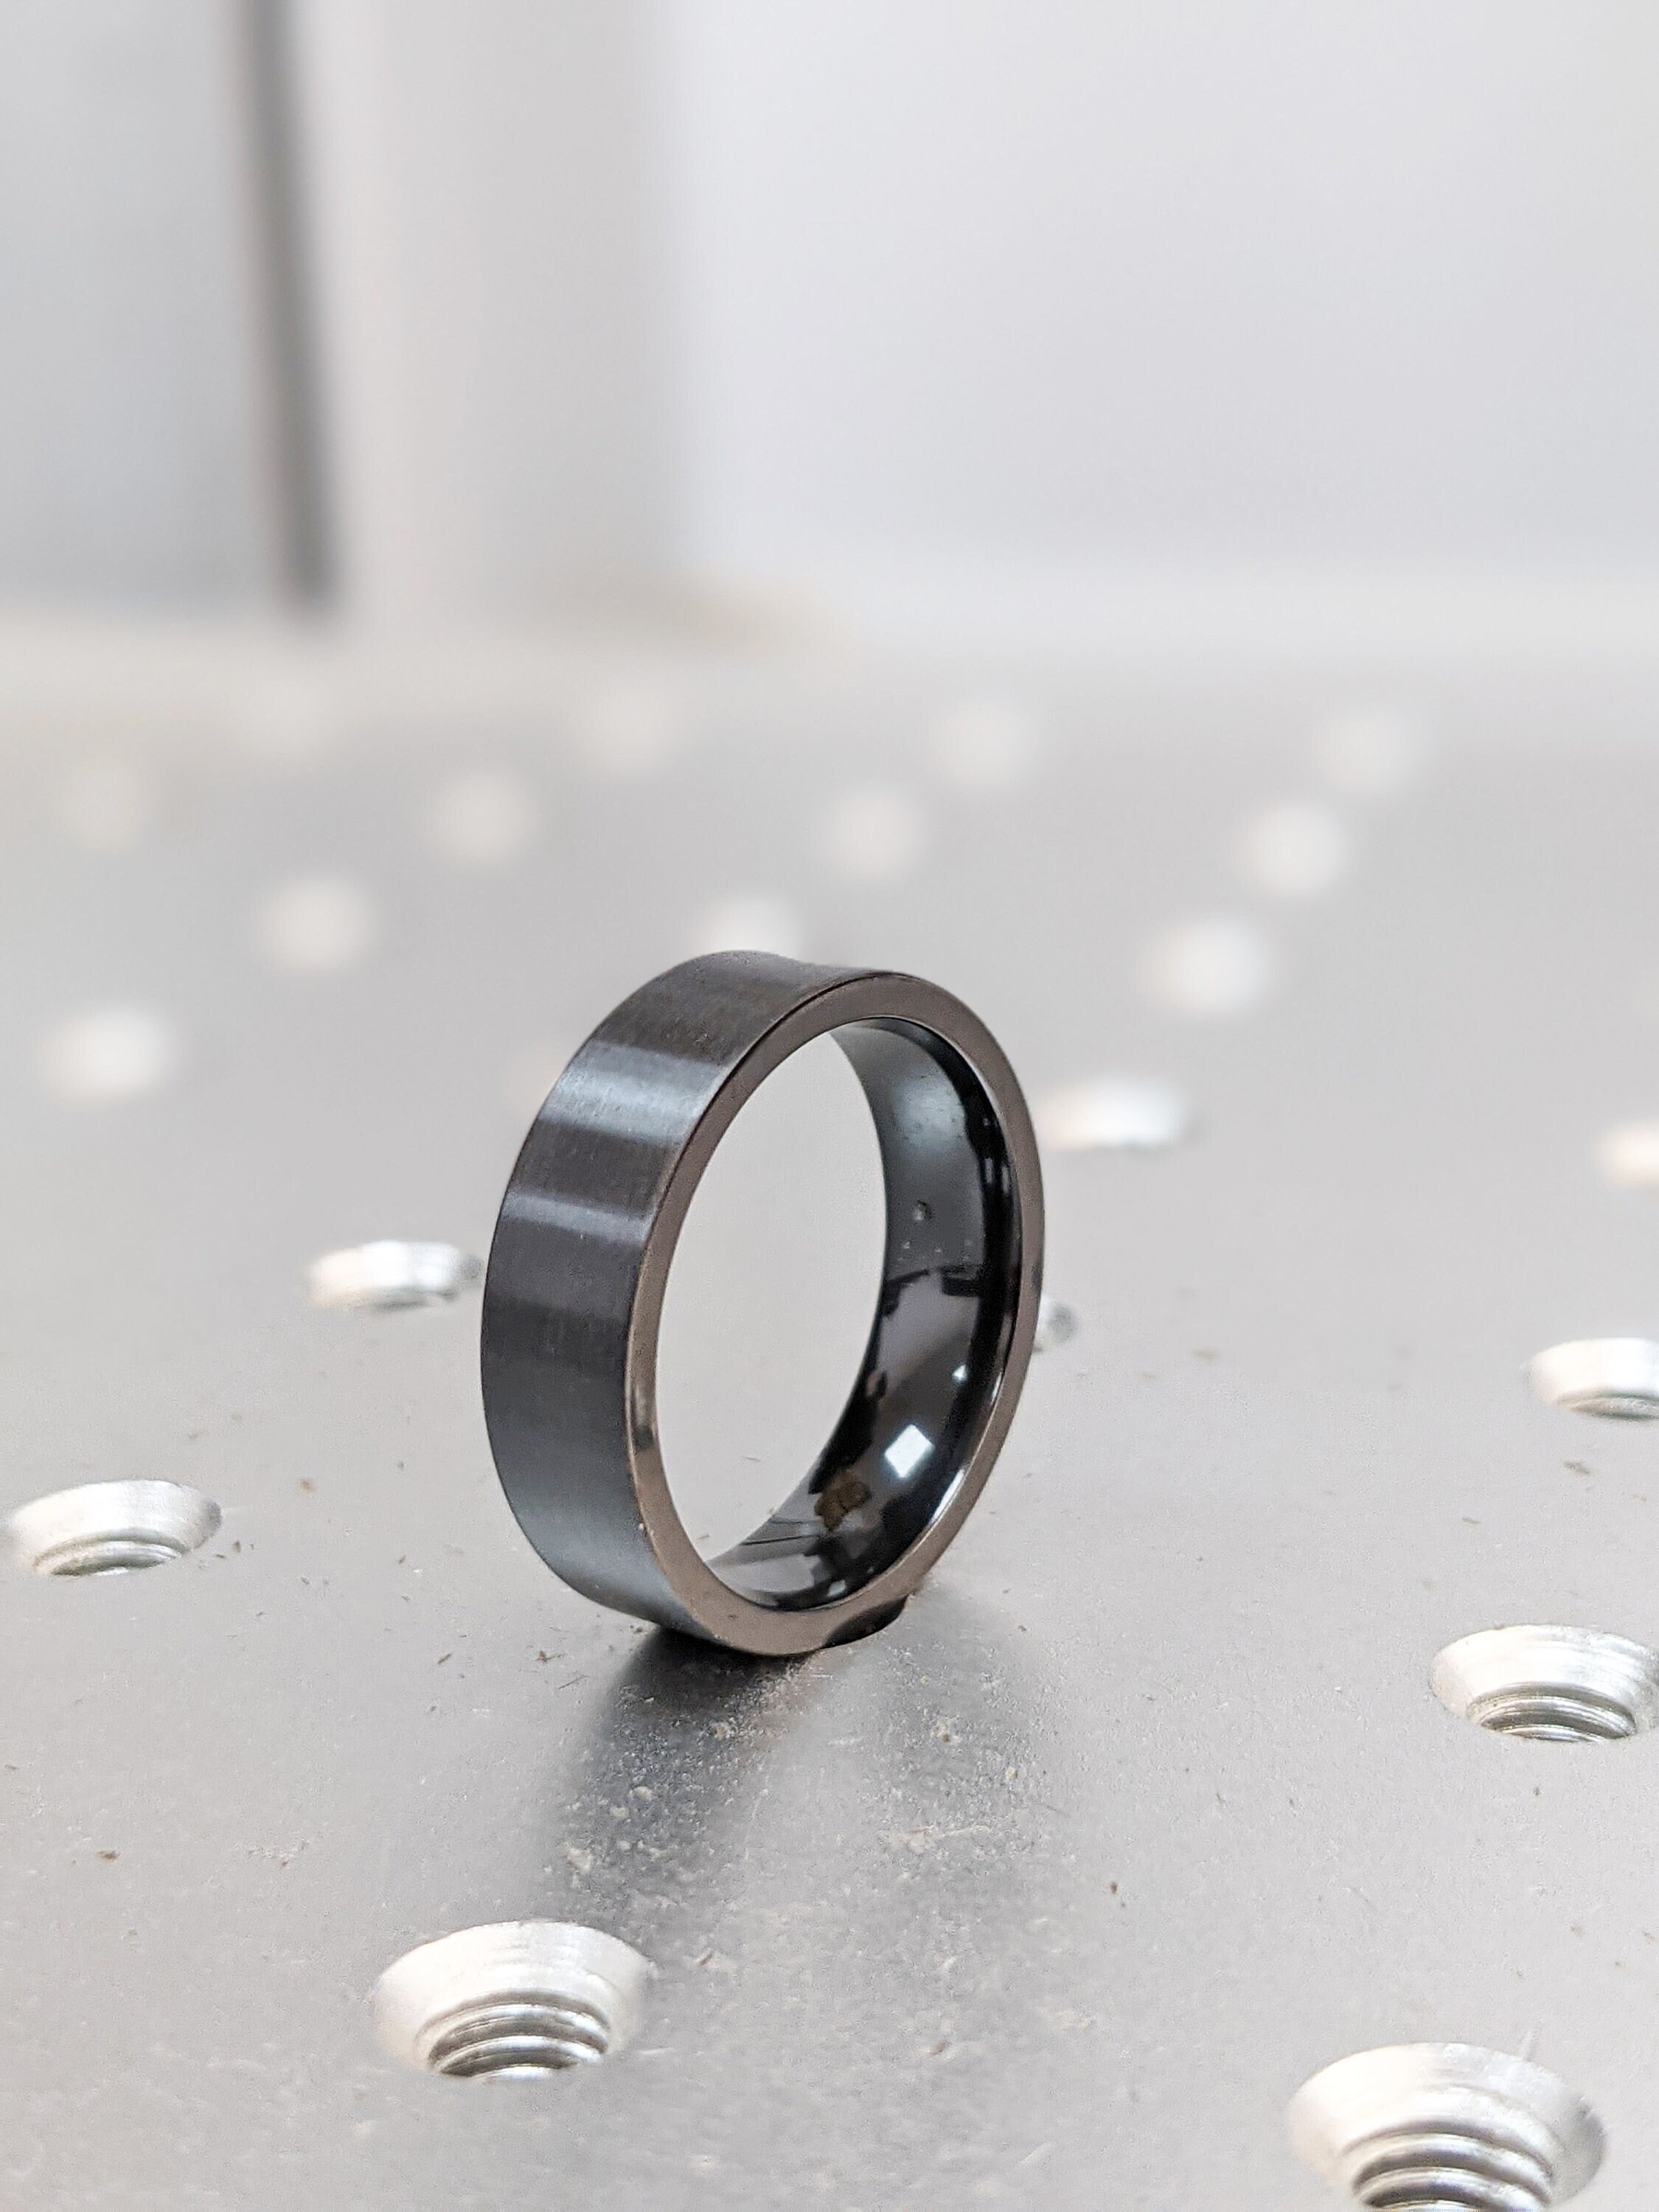 Schwarzer Zirconium Ring Traditioneller Stil Band gemacht / Flacher Schwarzer  Zirconium Ring / 6mm Einfacher Ring Für Ihn - .de